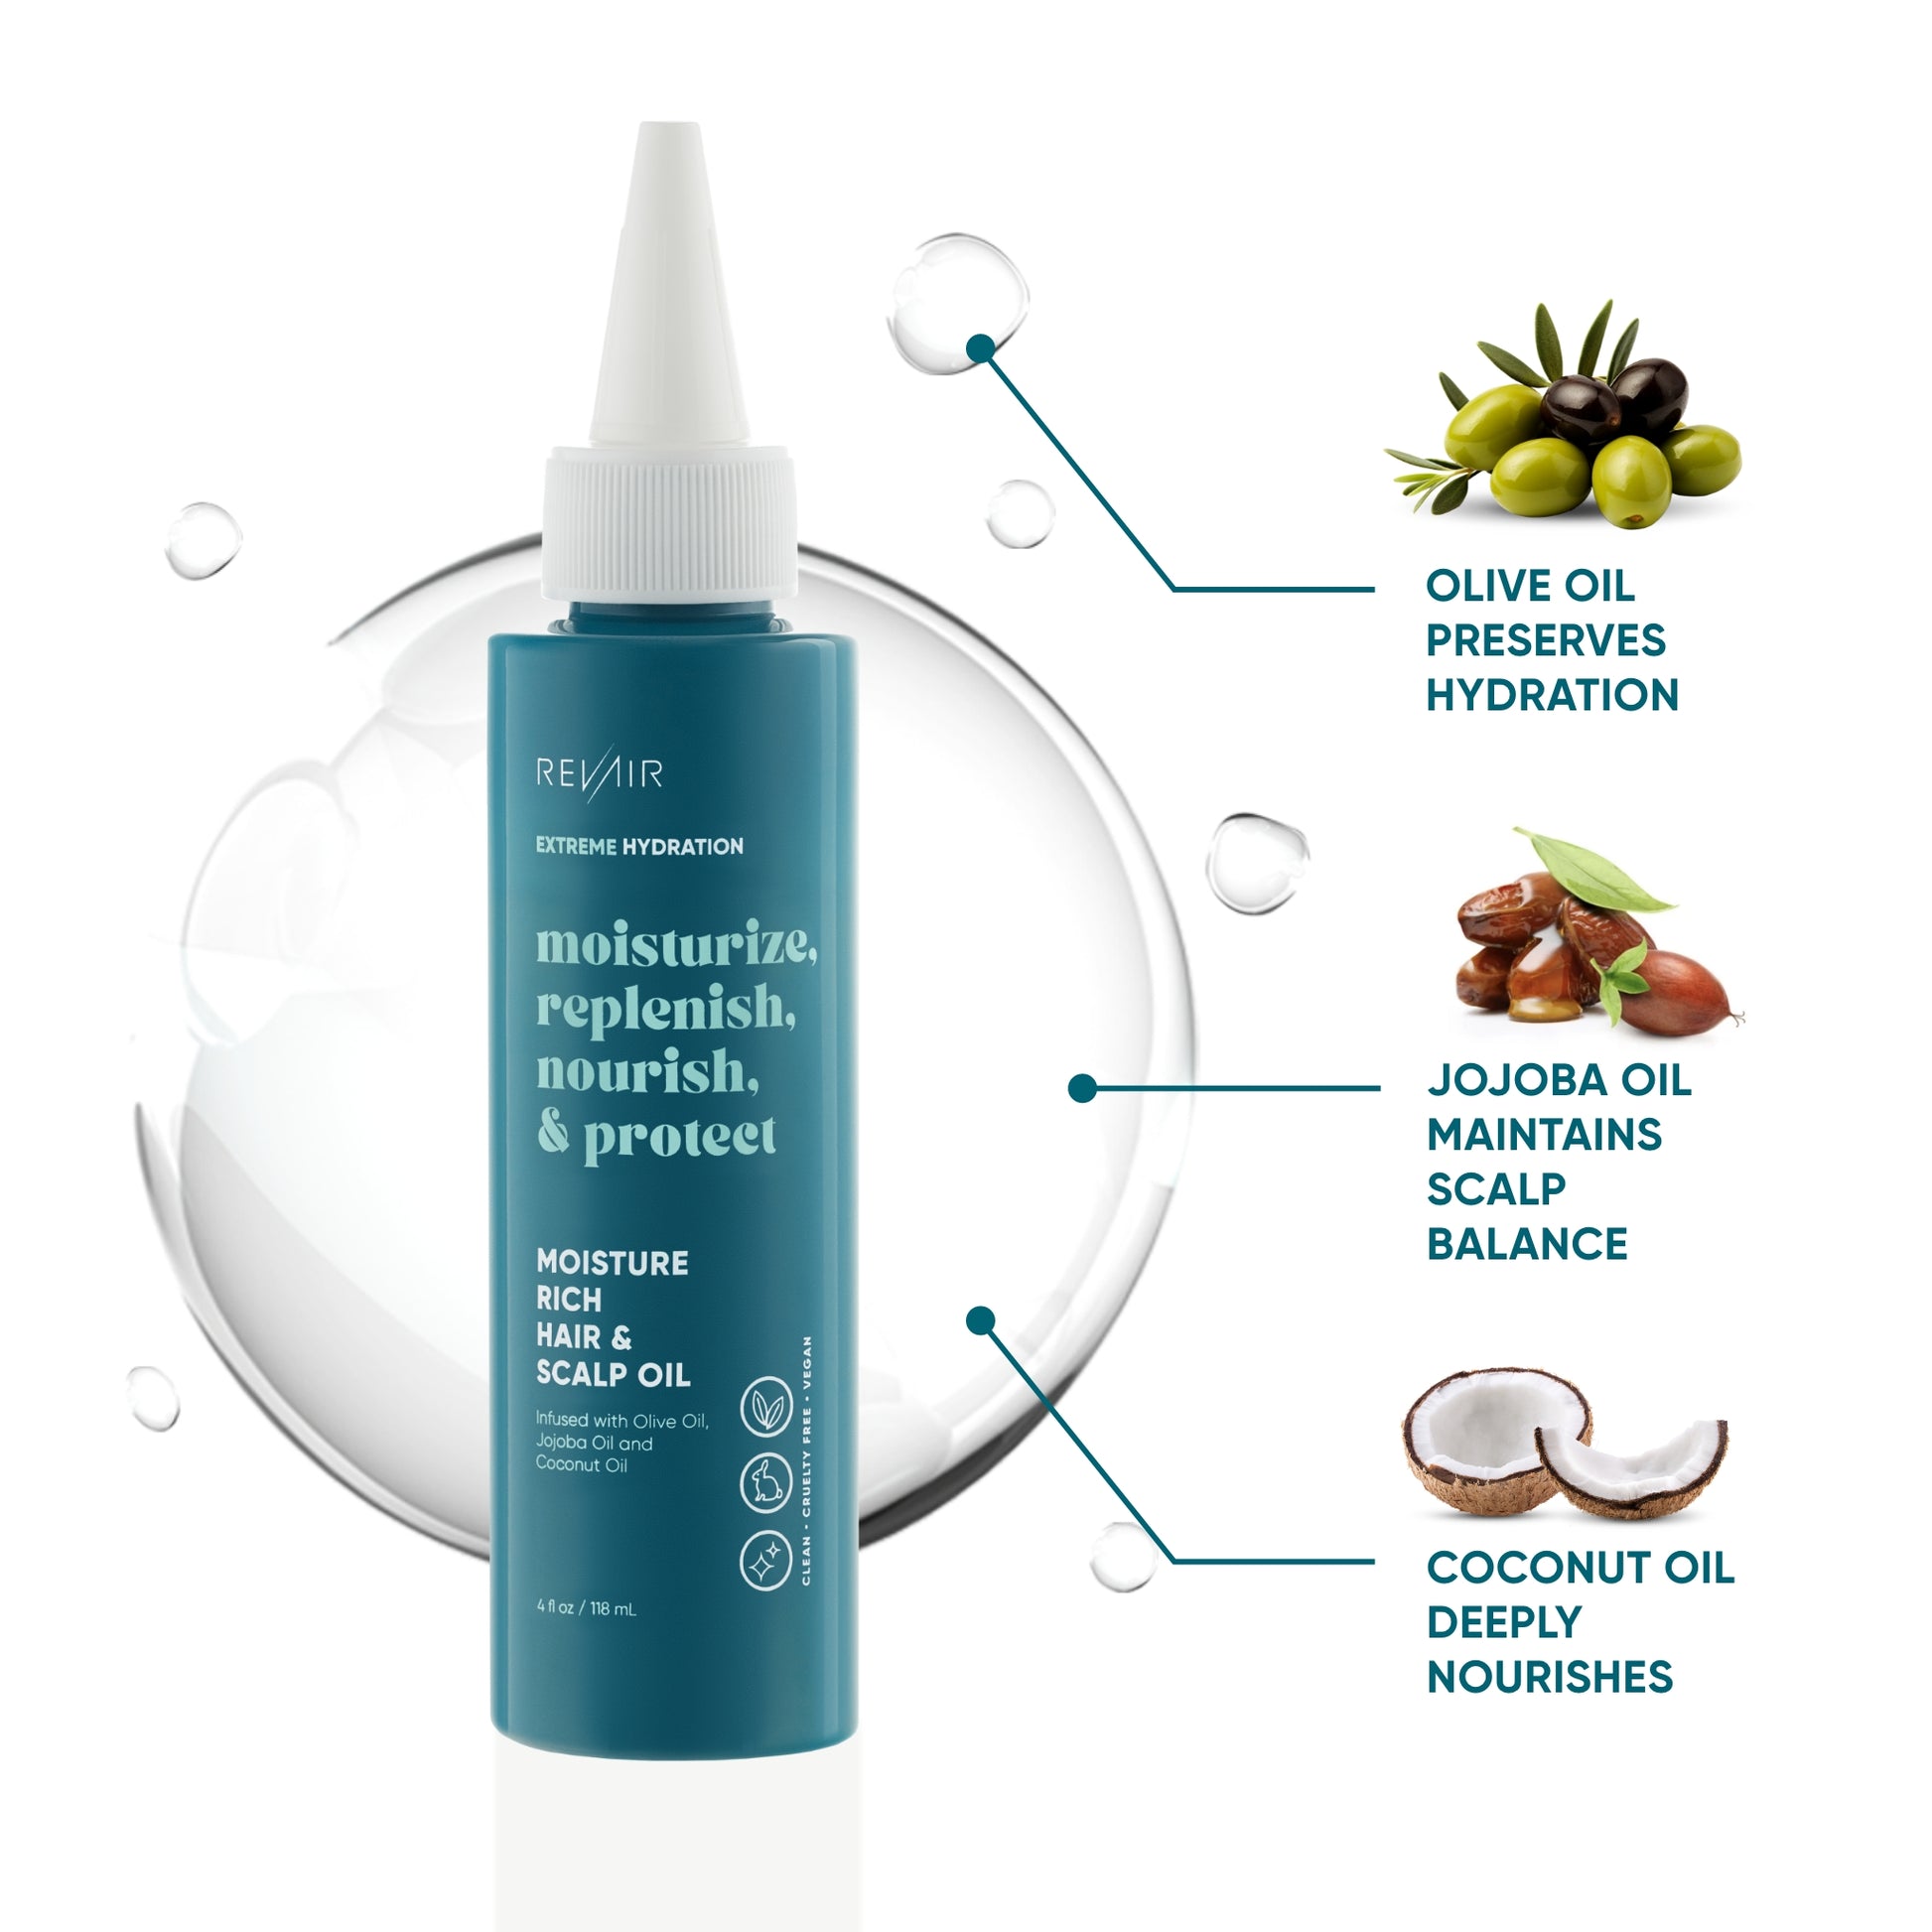 RevAir Moisture Rich Hair & Scalp Oil (4 oz) to seal in moisture and shine